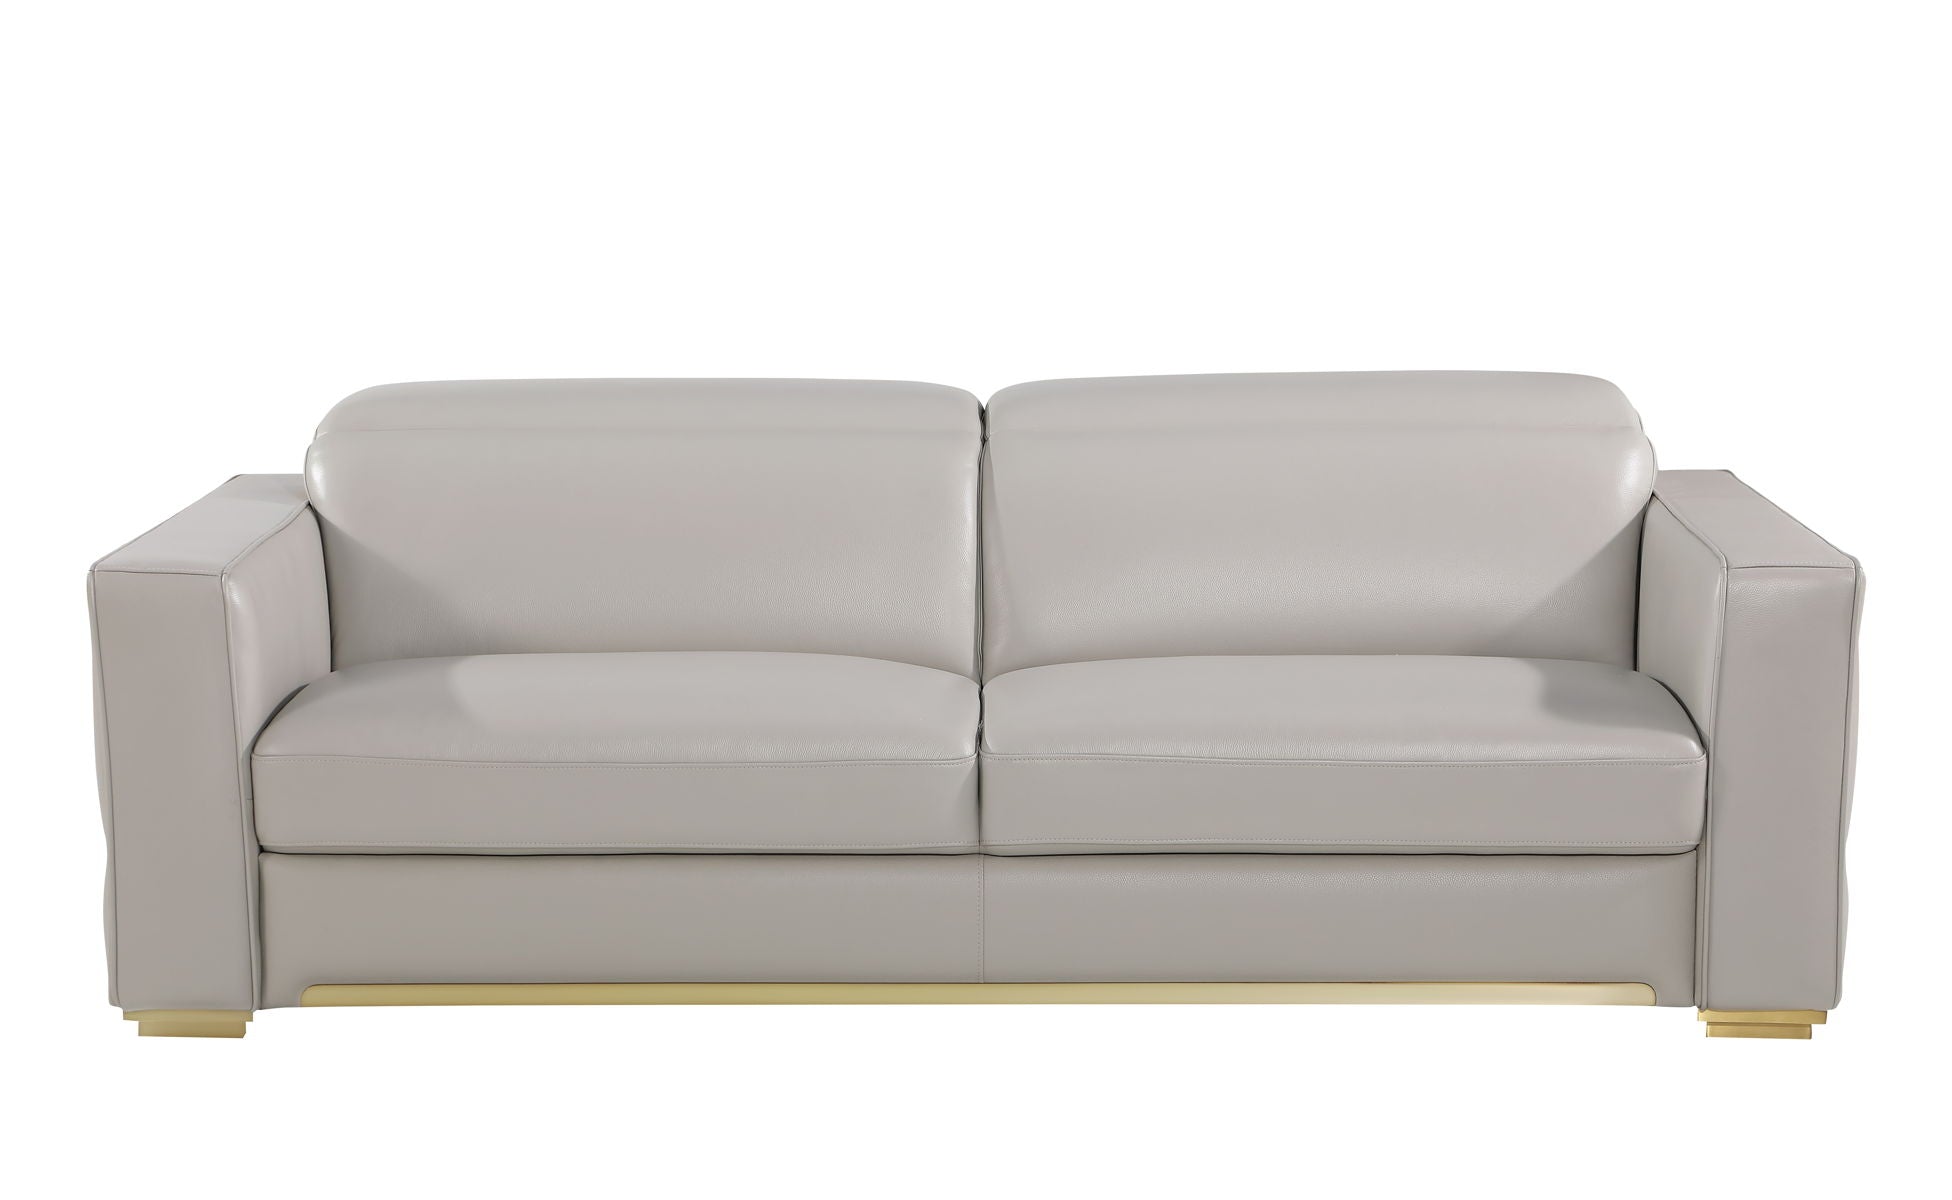 1120 - Leather Sofa